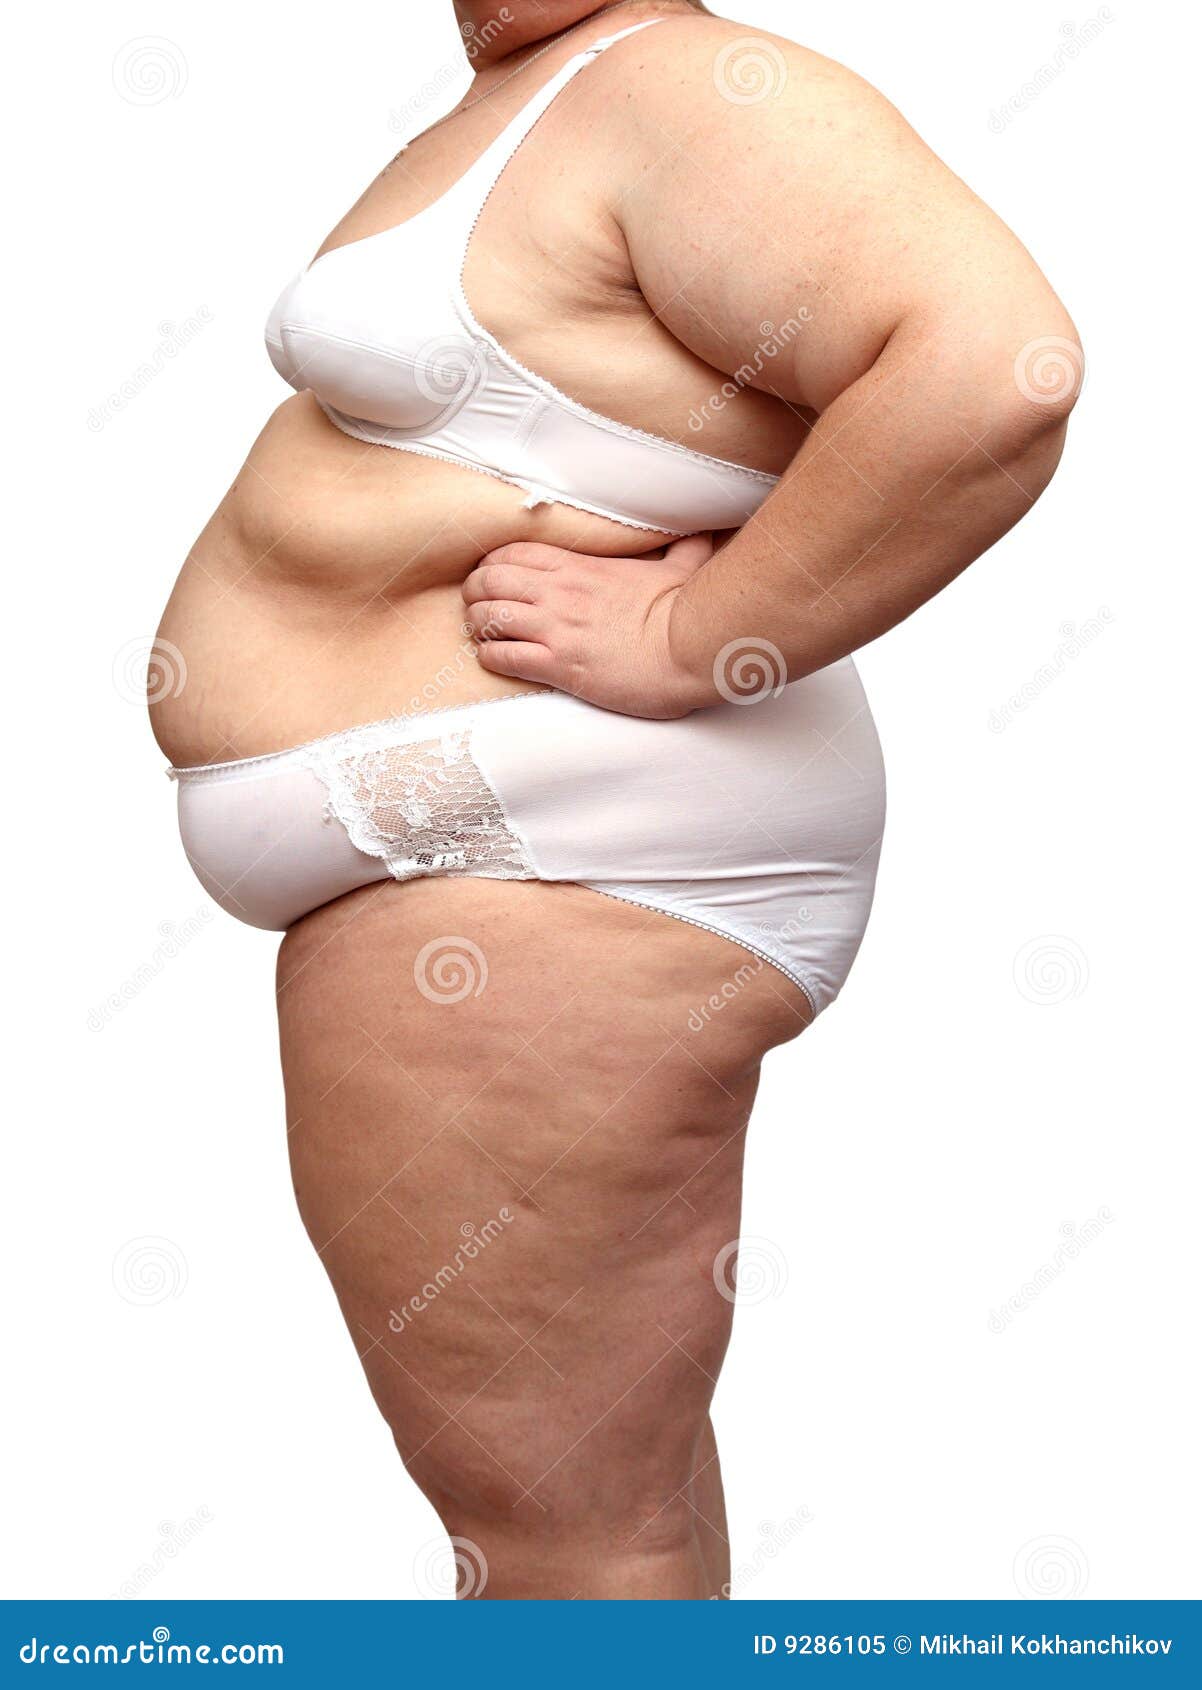 [Image: overweight-woman-body-underwear-9286105.jpg]